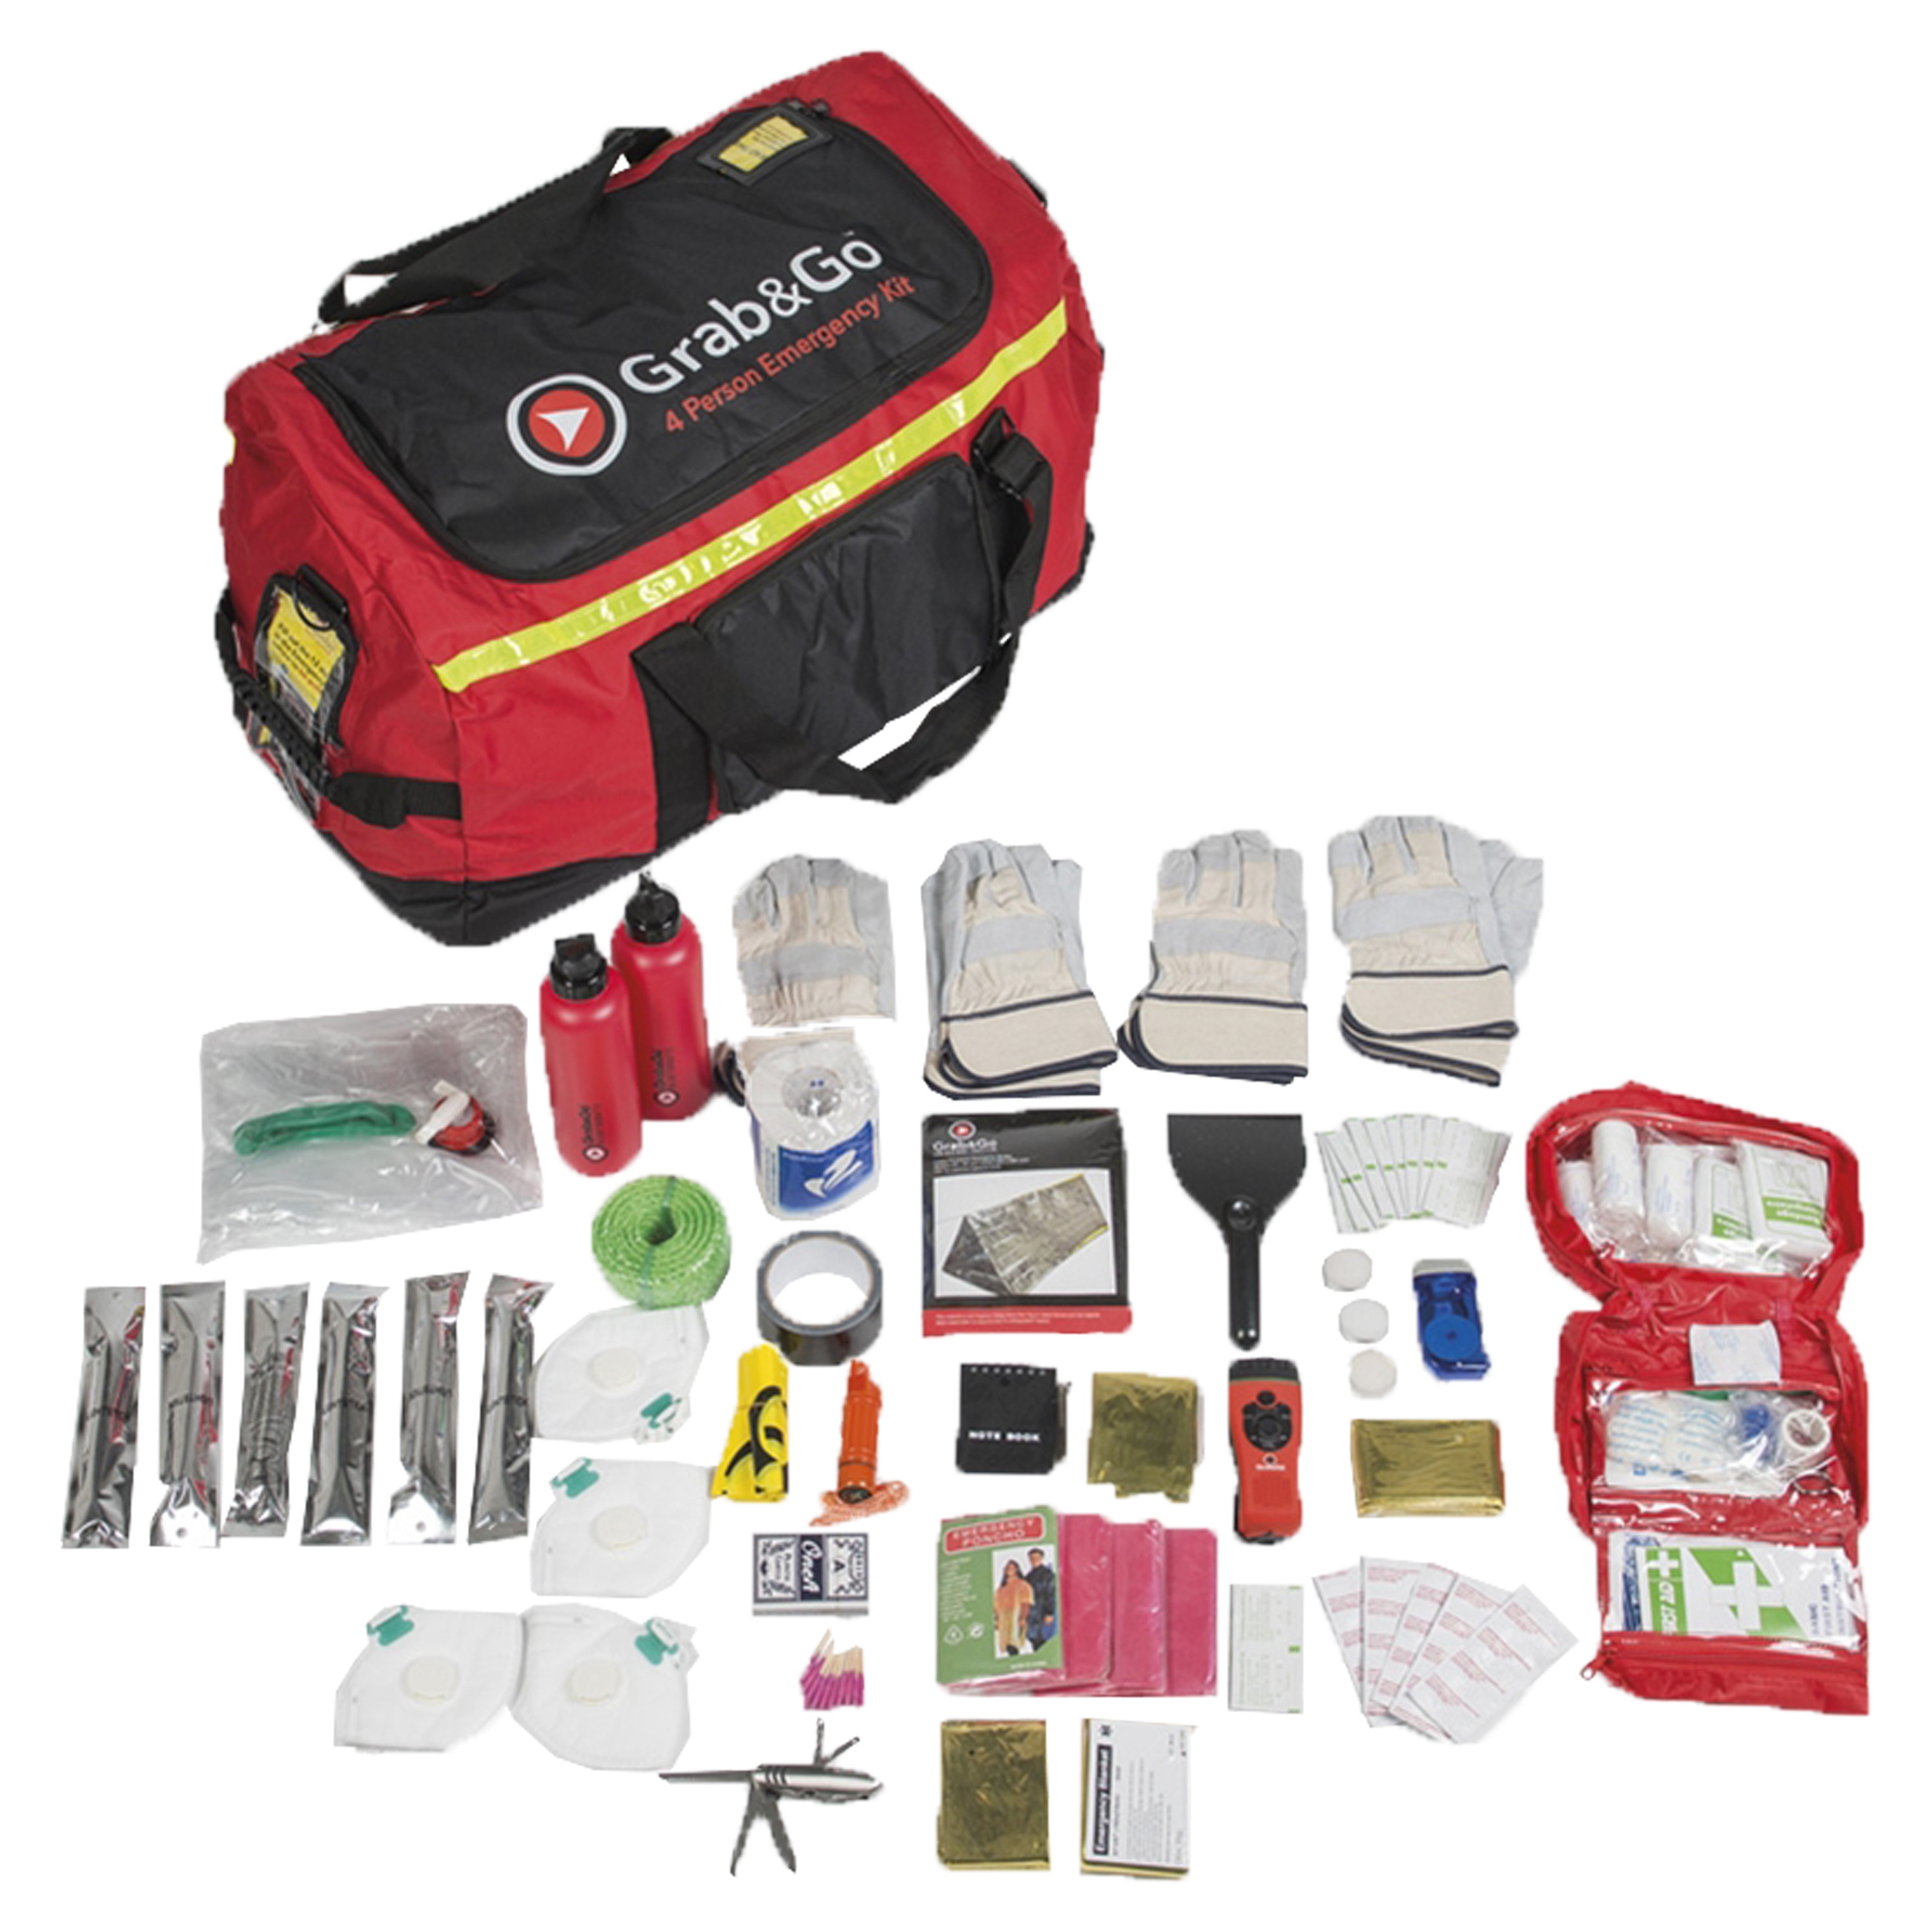 Kit d'emergenza adatto per 4 persone, marca Grab&Go